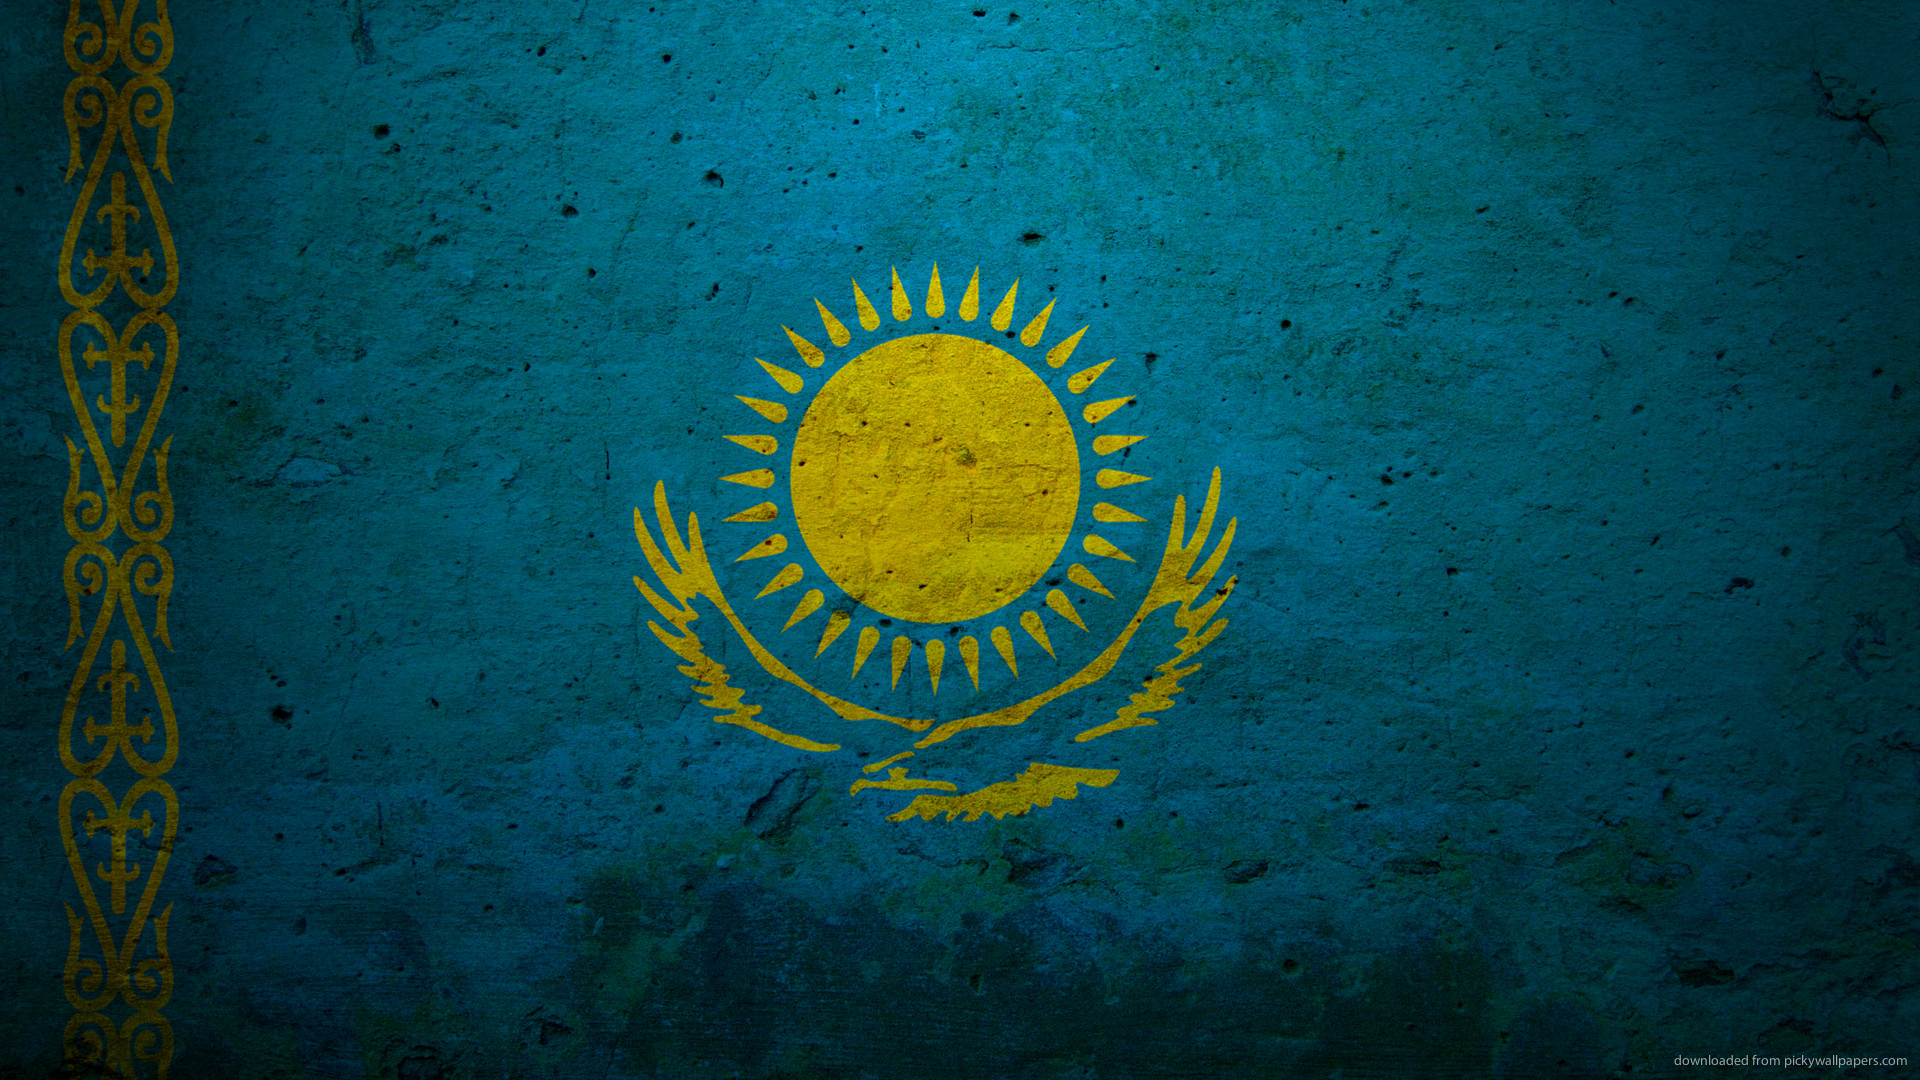 Скачать обои Флаг Казахстана на телефон бесплатно